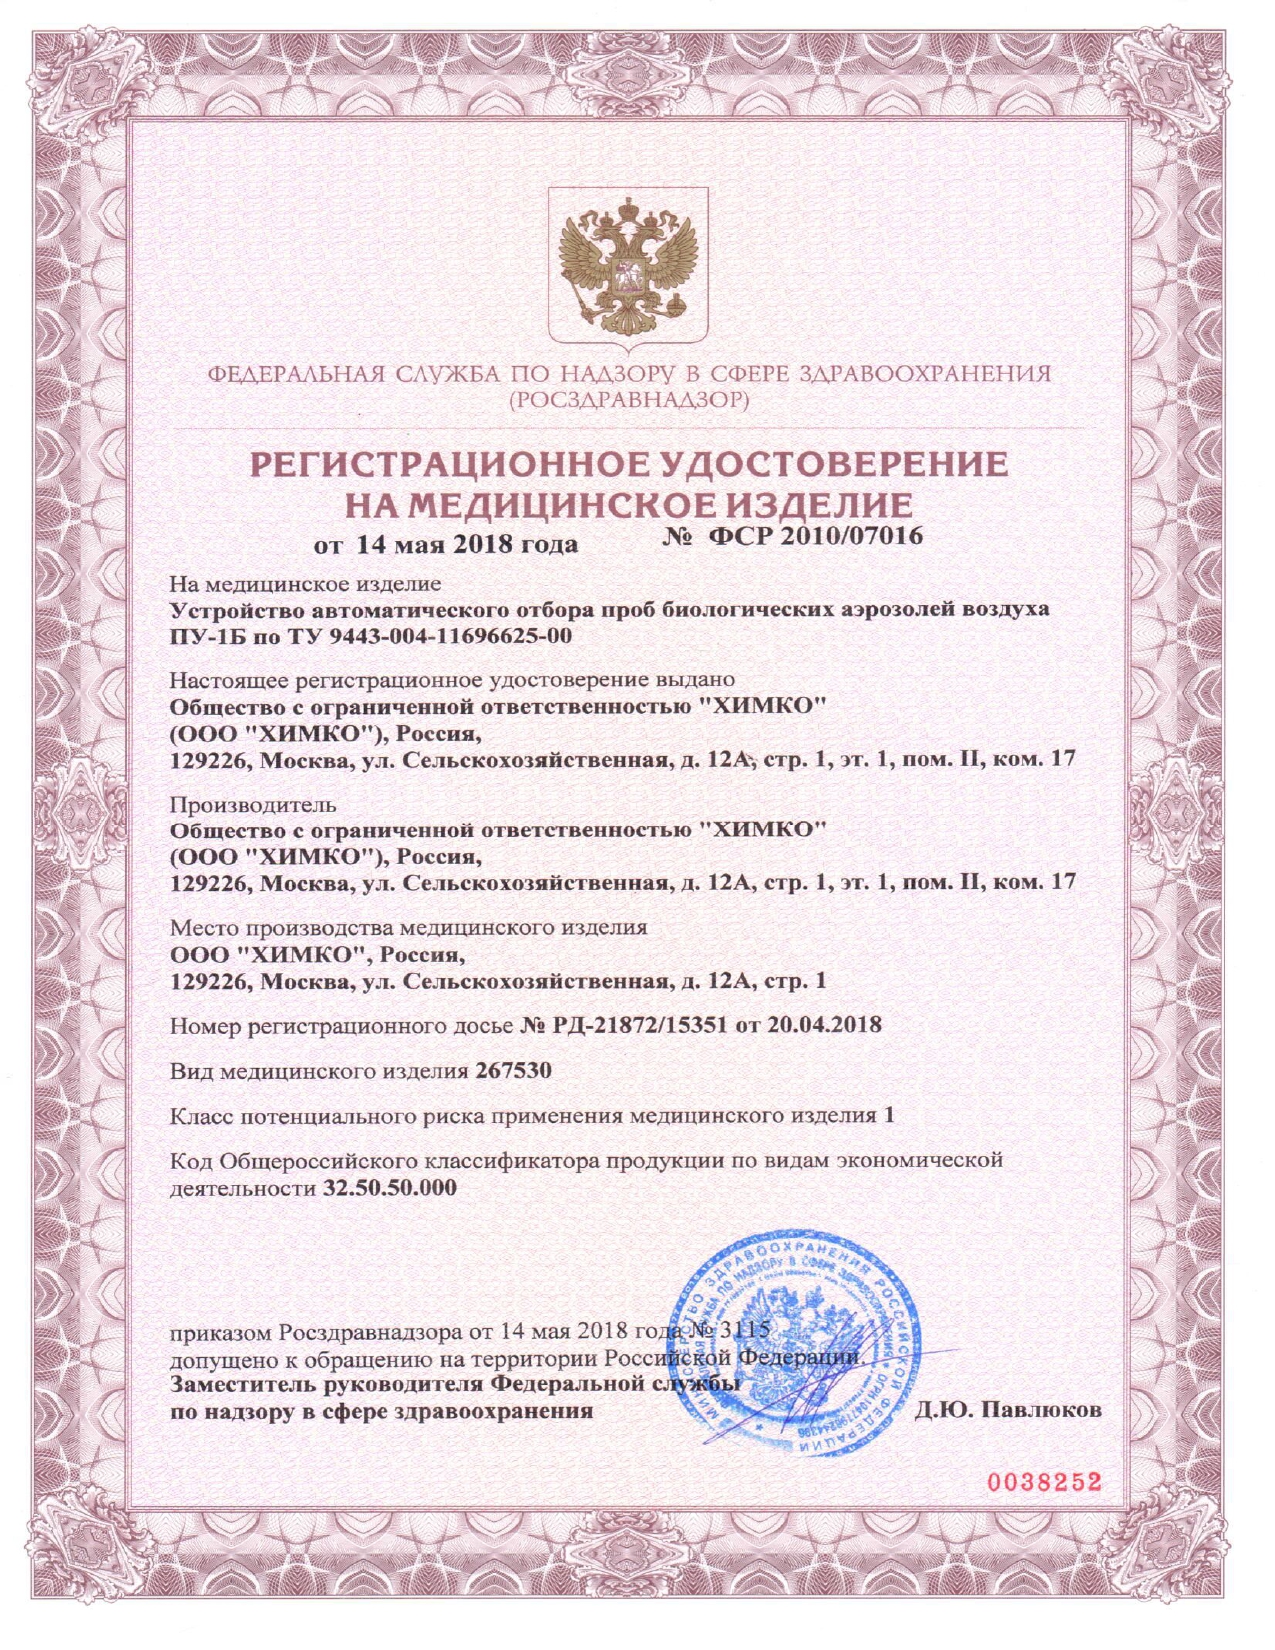 Регистрационное удостоверение на медицинское изделие ПУ-1Б